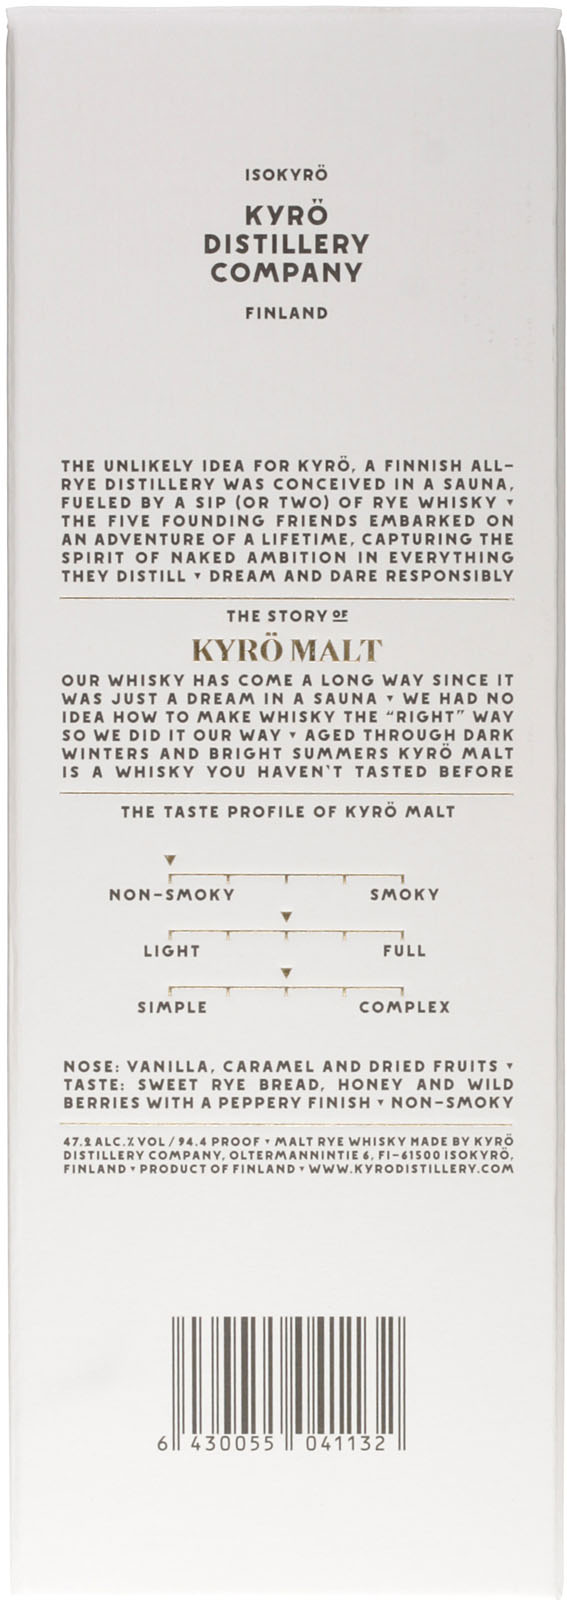 Kyrö Malt Rye Whisky aus Finnland hier im Spirituosen S